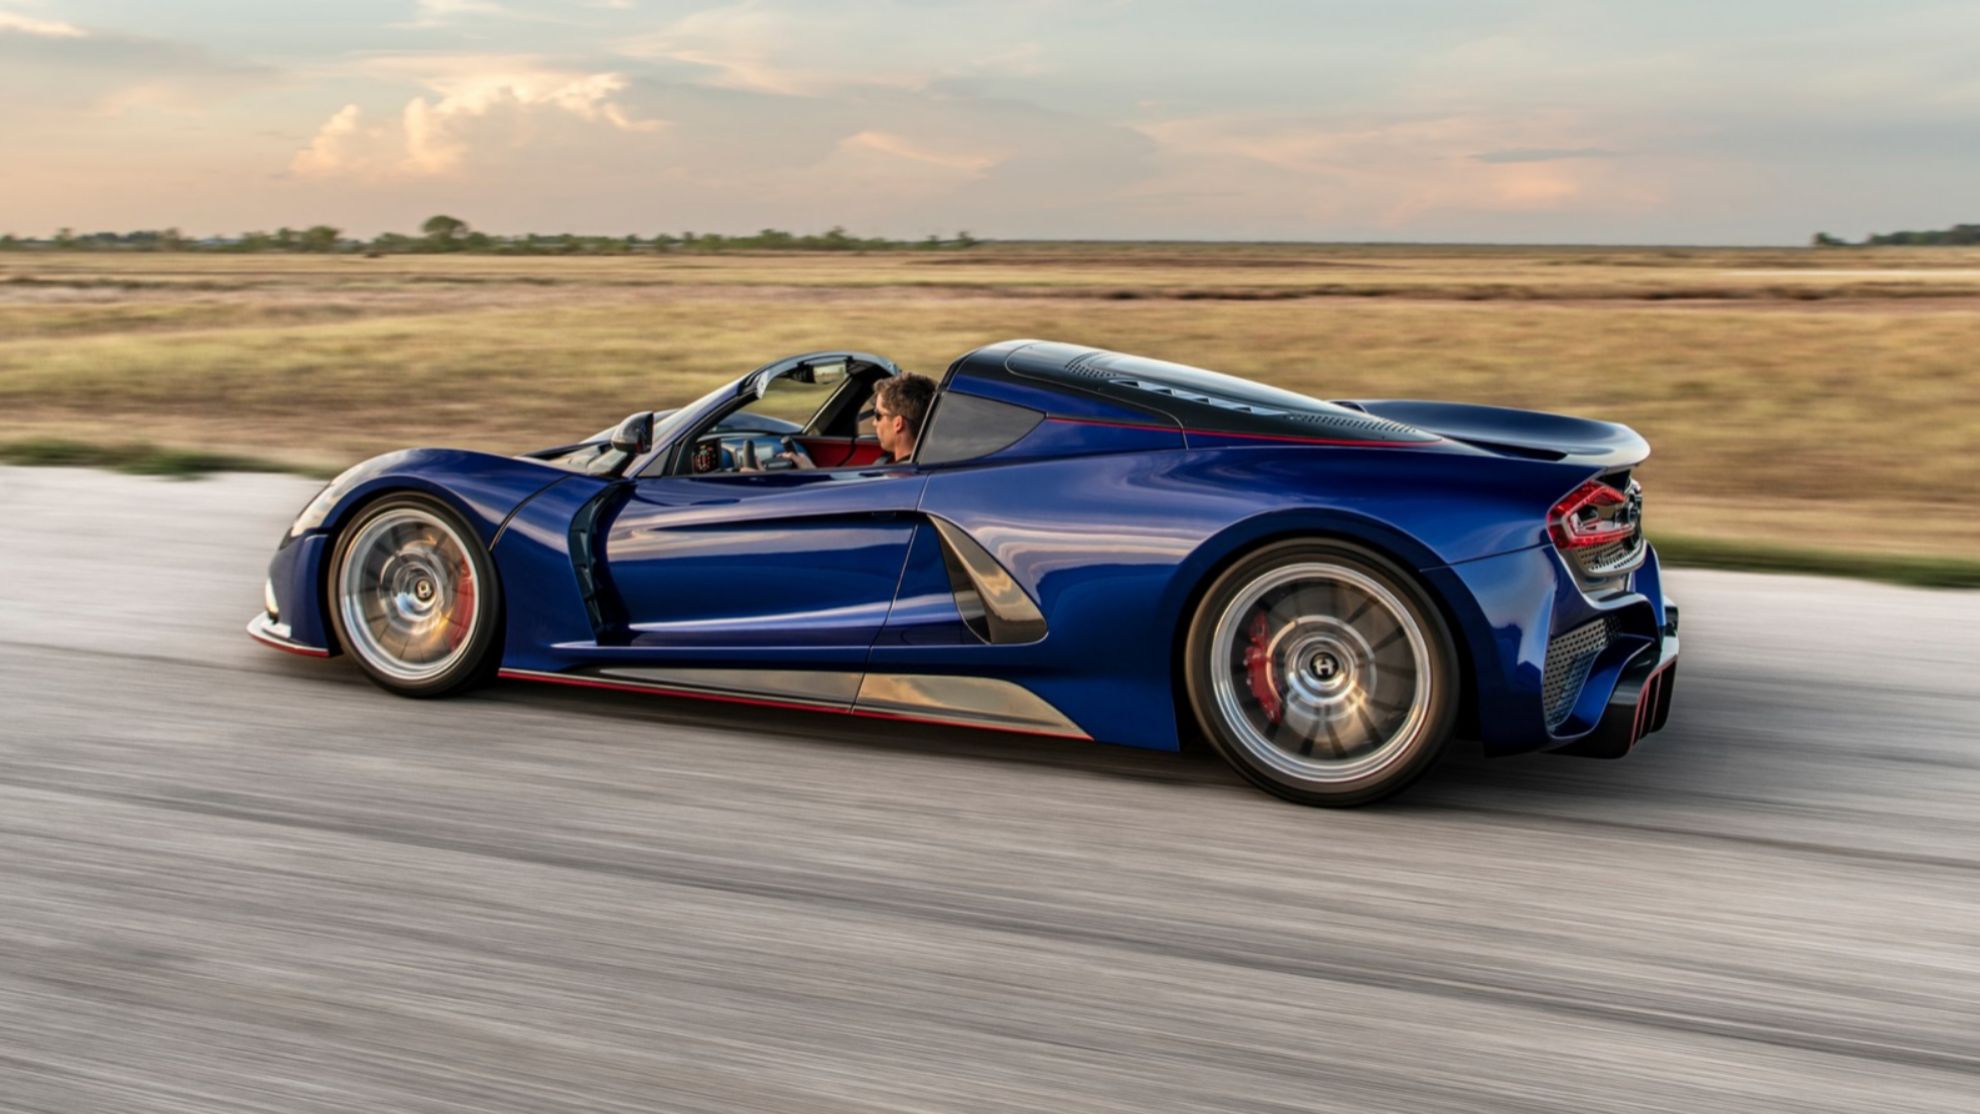 El F5 Roadster aspira a superar las 300 mph (482 km/h).